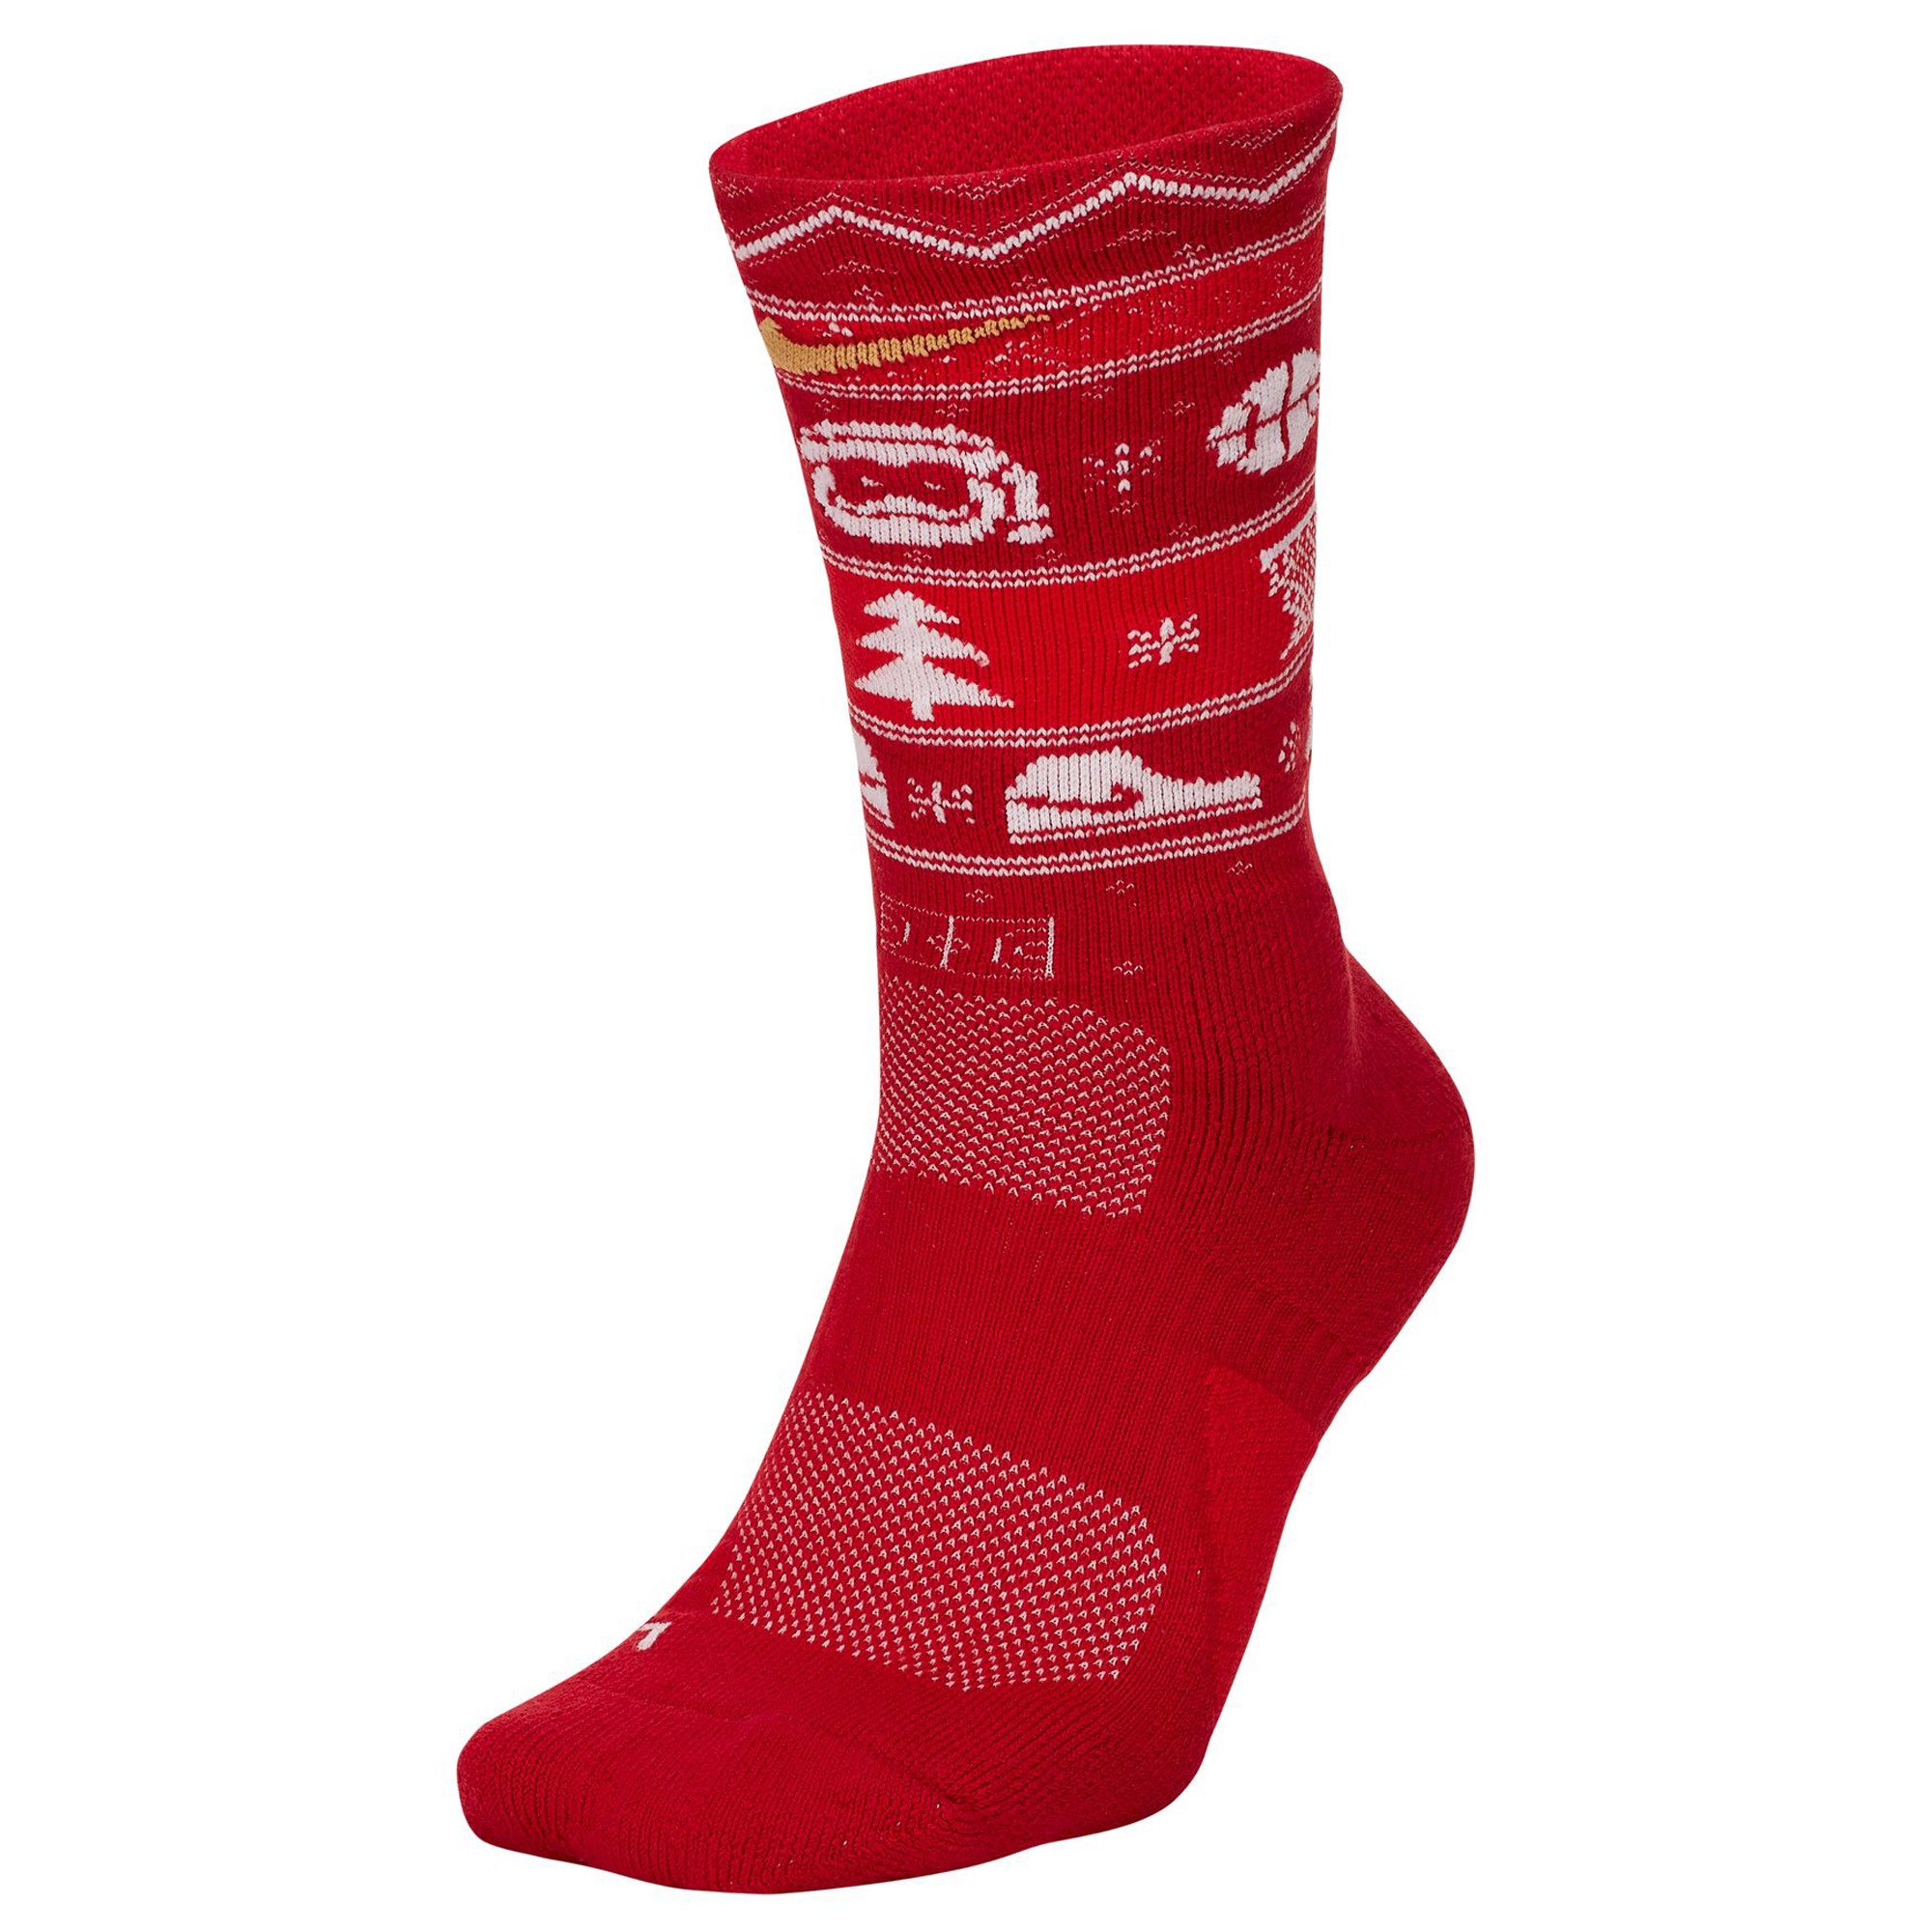 Socksmith Men's Mythical Kissmas Crew Socks, Red